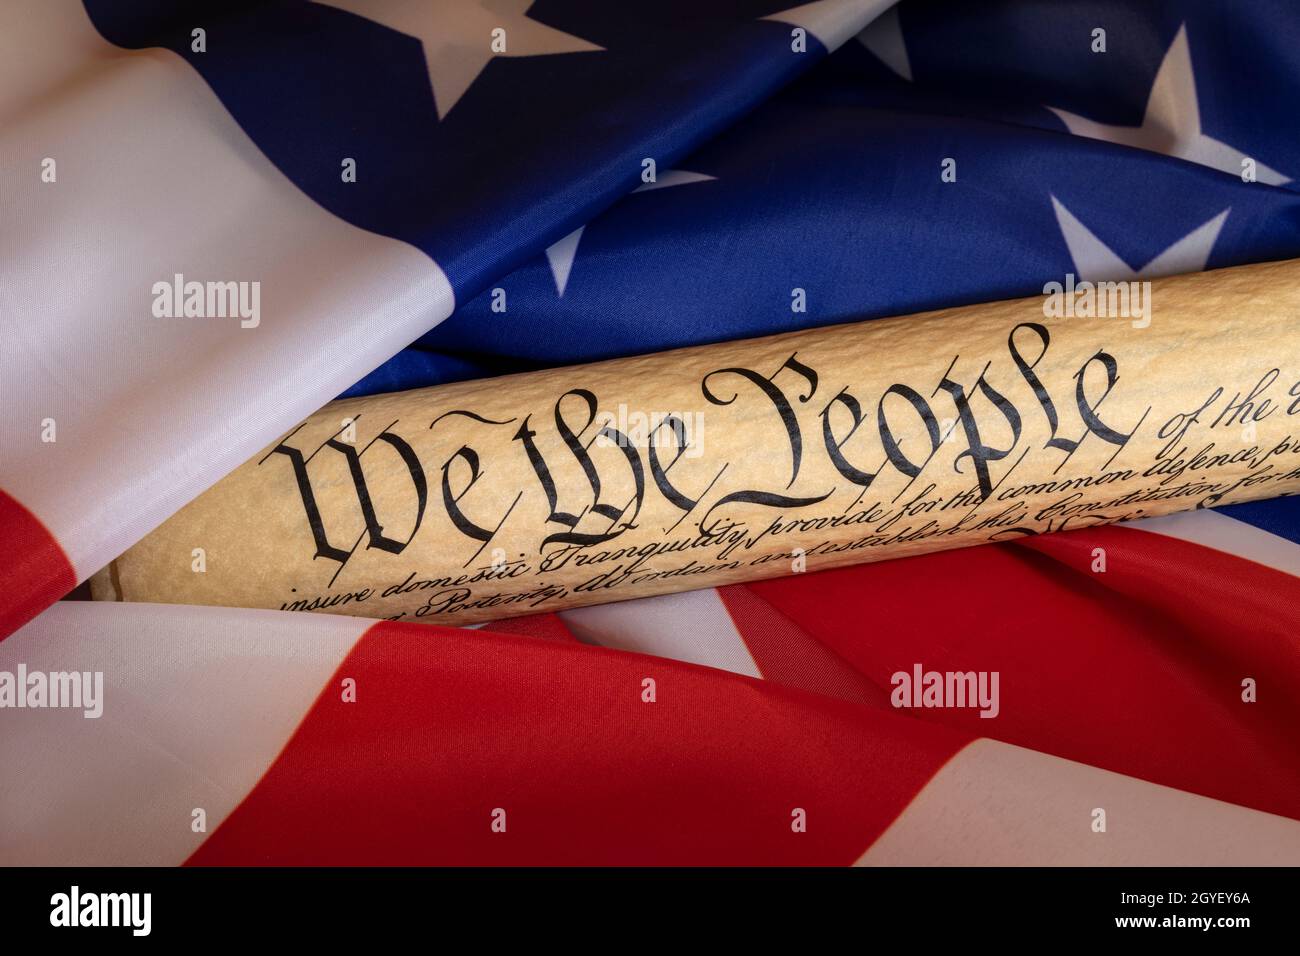 La Constitución enmarcada por la bandera estadounidense simboliza una tierra de leyes que abrazan la libertad y la prosperidad. Foto de stock